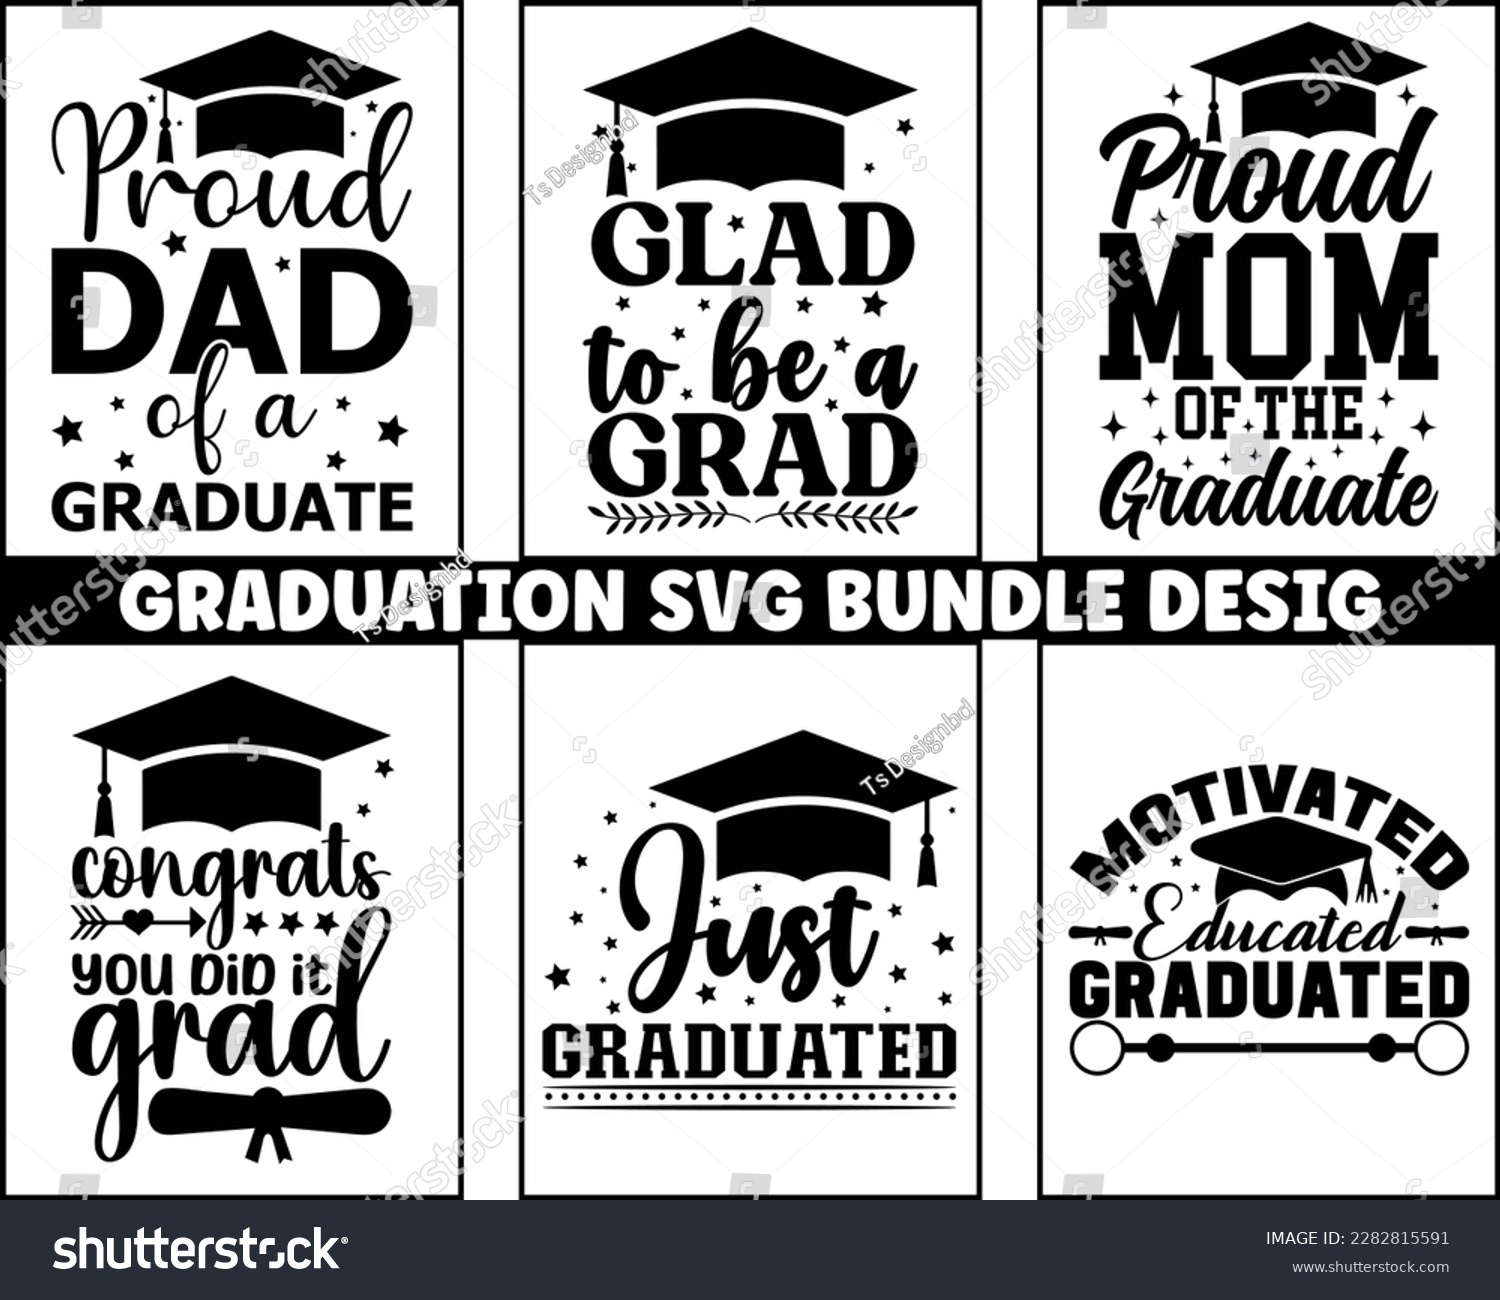 SVG of graduation svg design bundle,Graduation 2023 SVG Bundle,Senior Graduation svg,proud family of a 2023 graduate,congratulations school symbols,Congrats grad svg